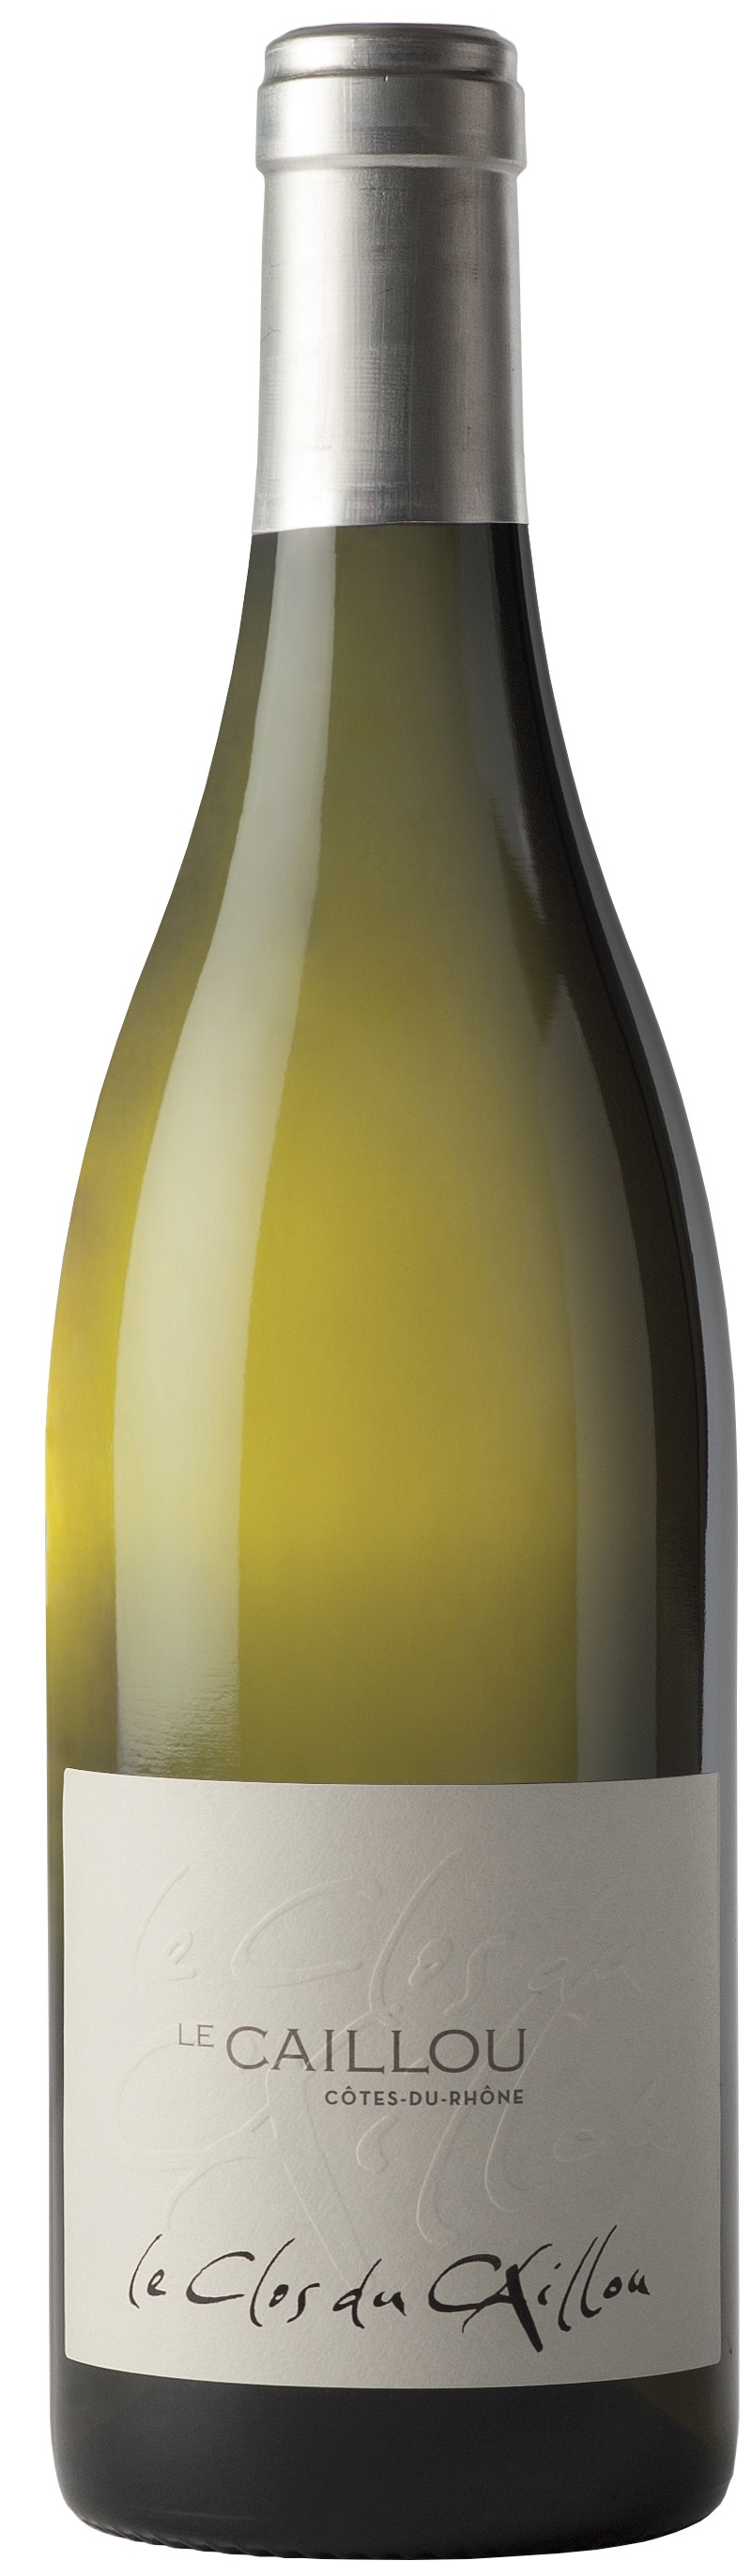 Bottle of Clos du Caillou Côtes du Rhône Le Caillou Blanc from search results